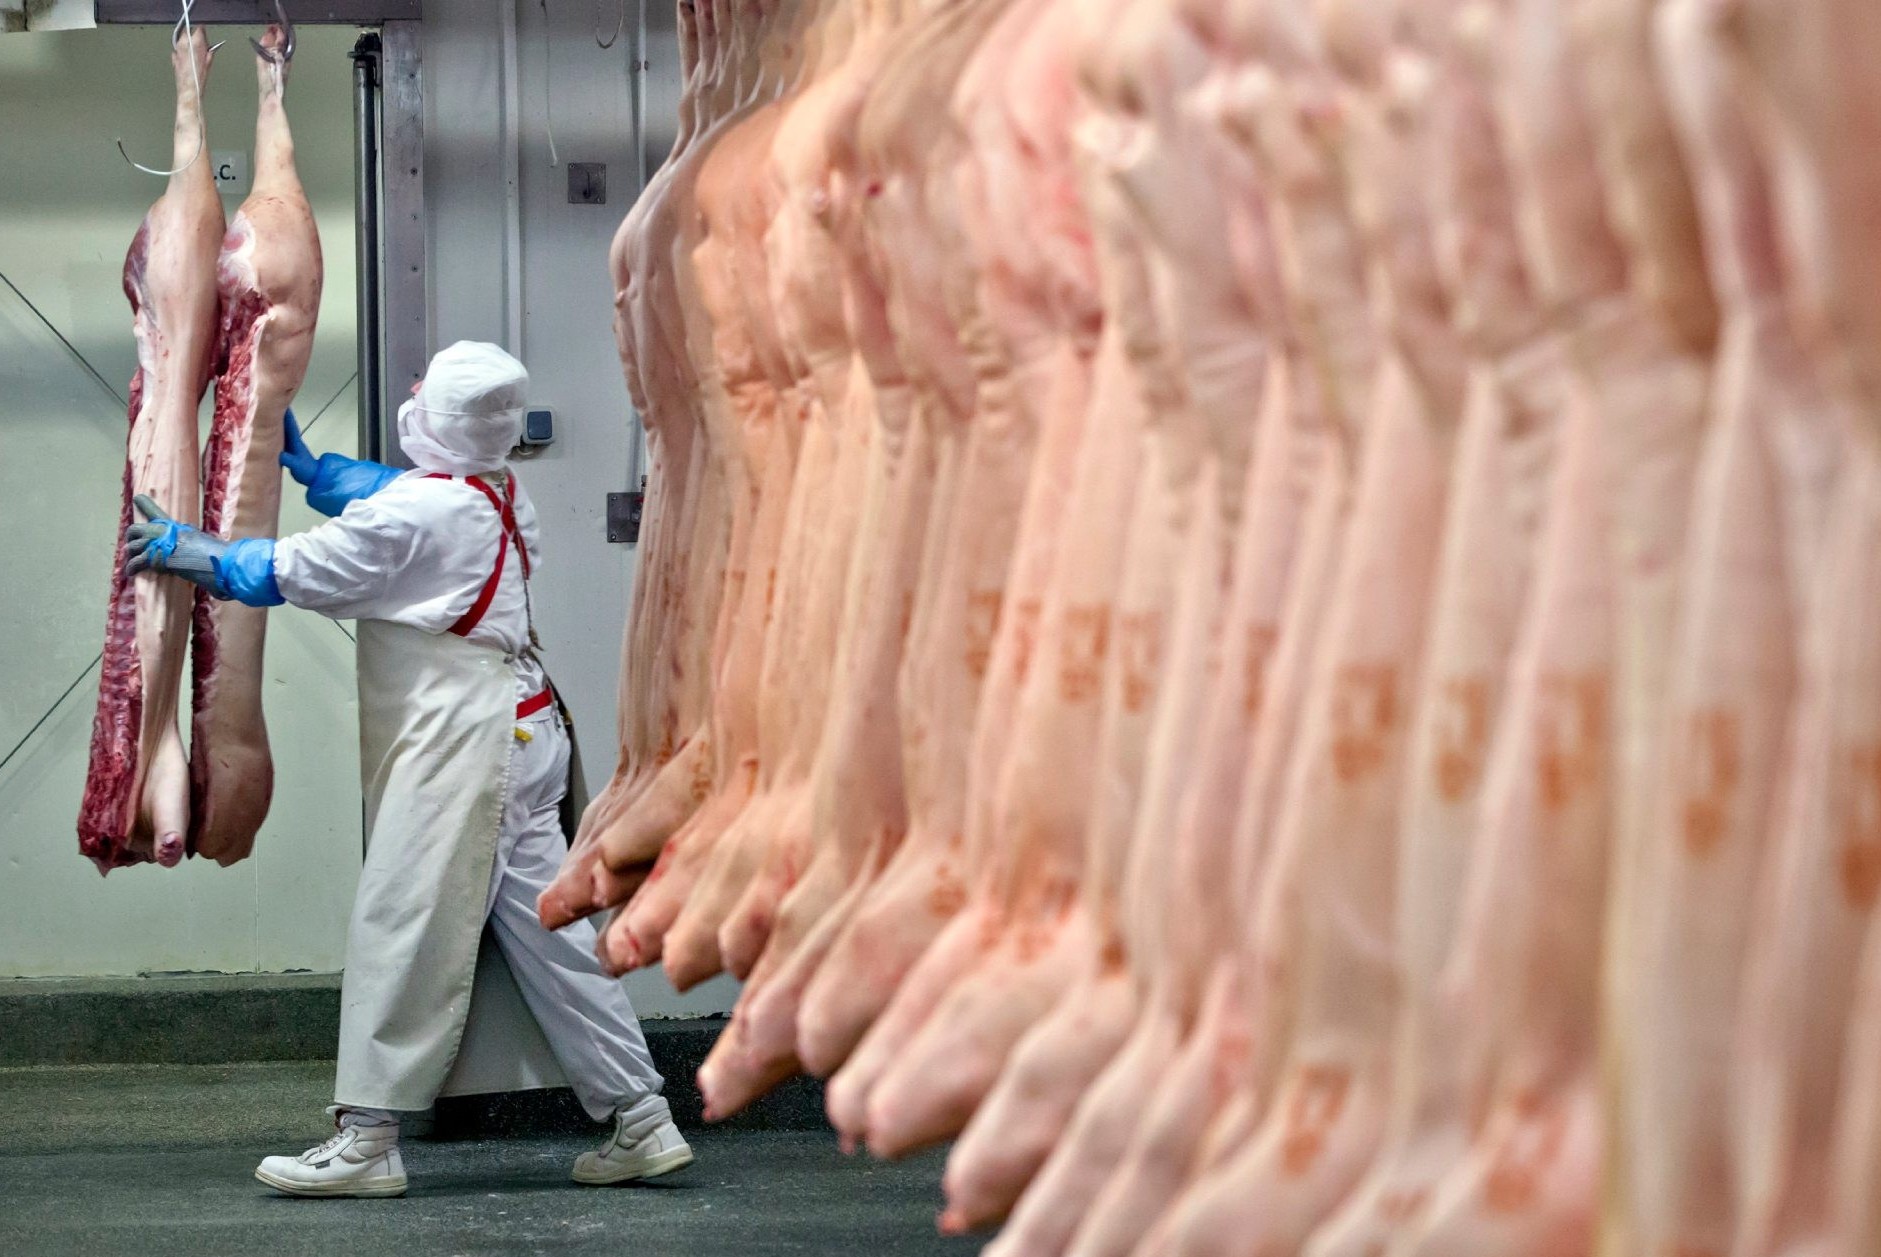 ΛΕΥΚΩΣΙΑ: Θα τρώγαμε 5,235 κιλά ακατάλληλου κρέατος – Τους «τσάκωσαν» στο πάρα πέντε